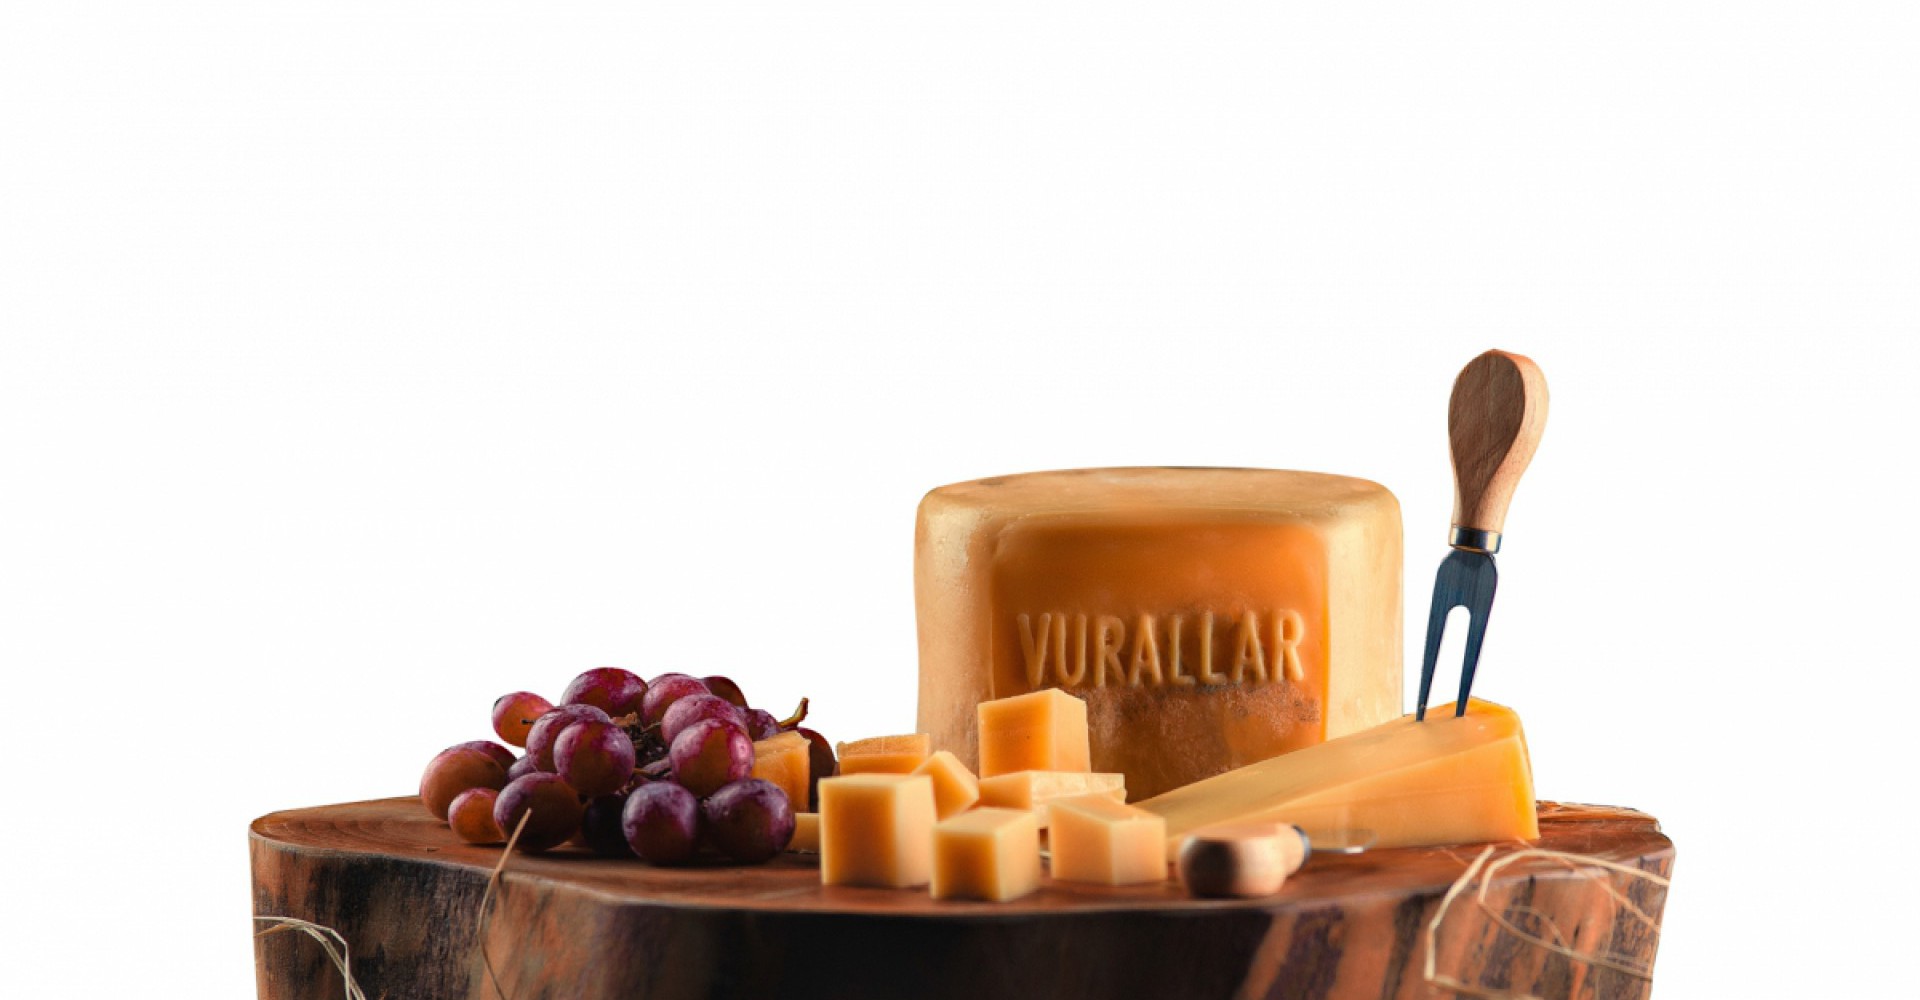 Vurallar Cheesemaking